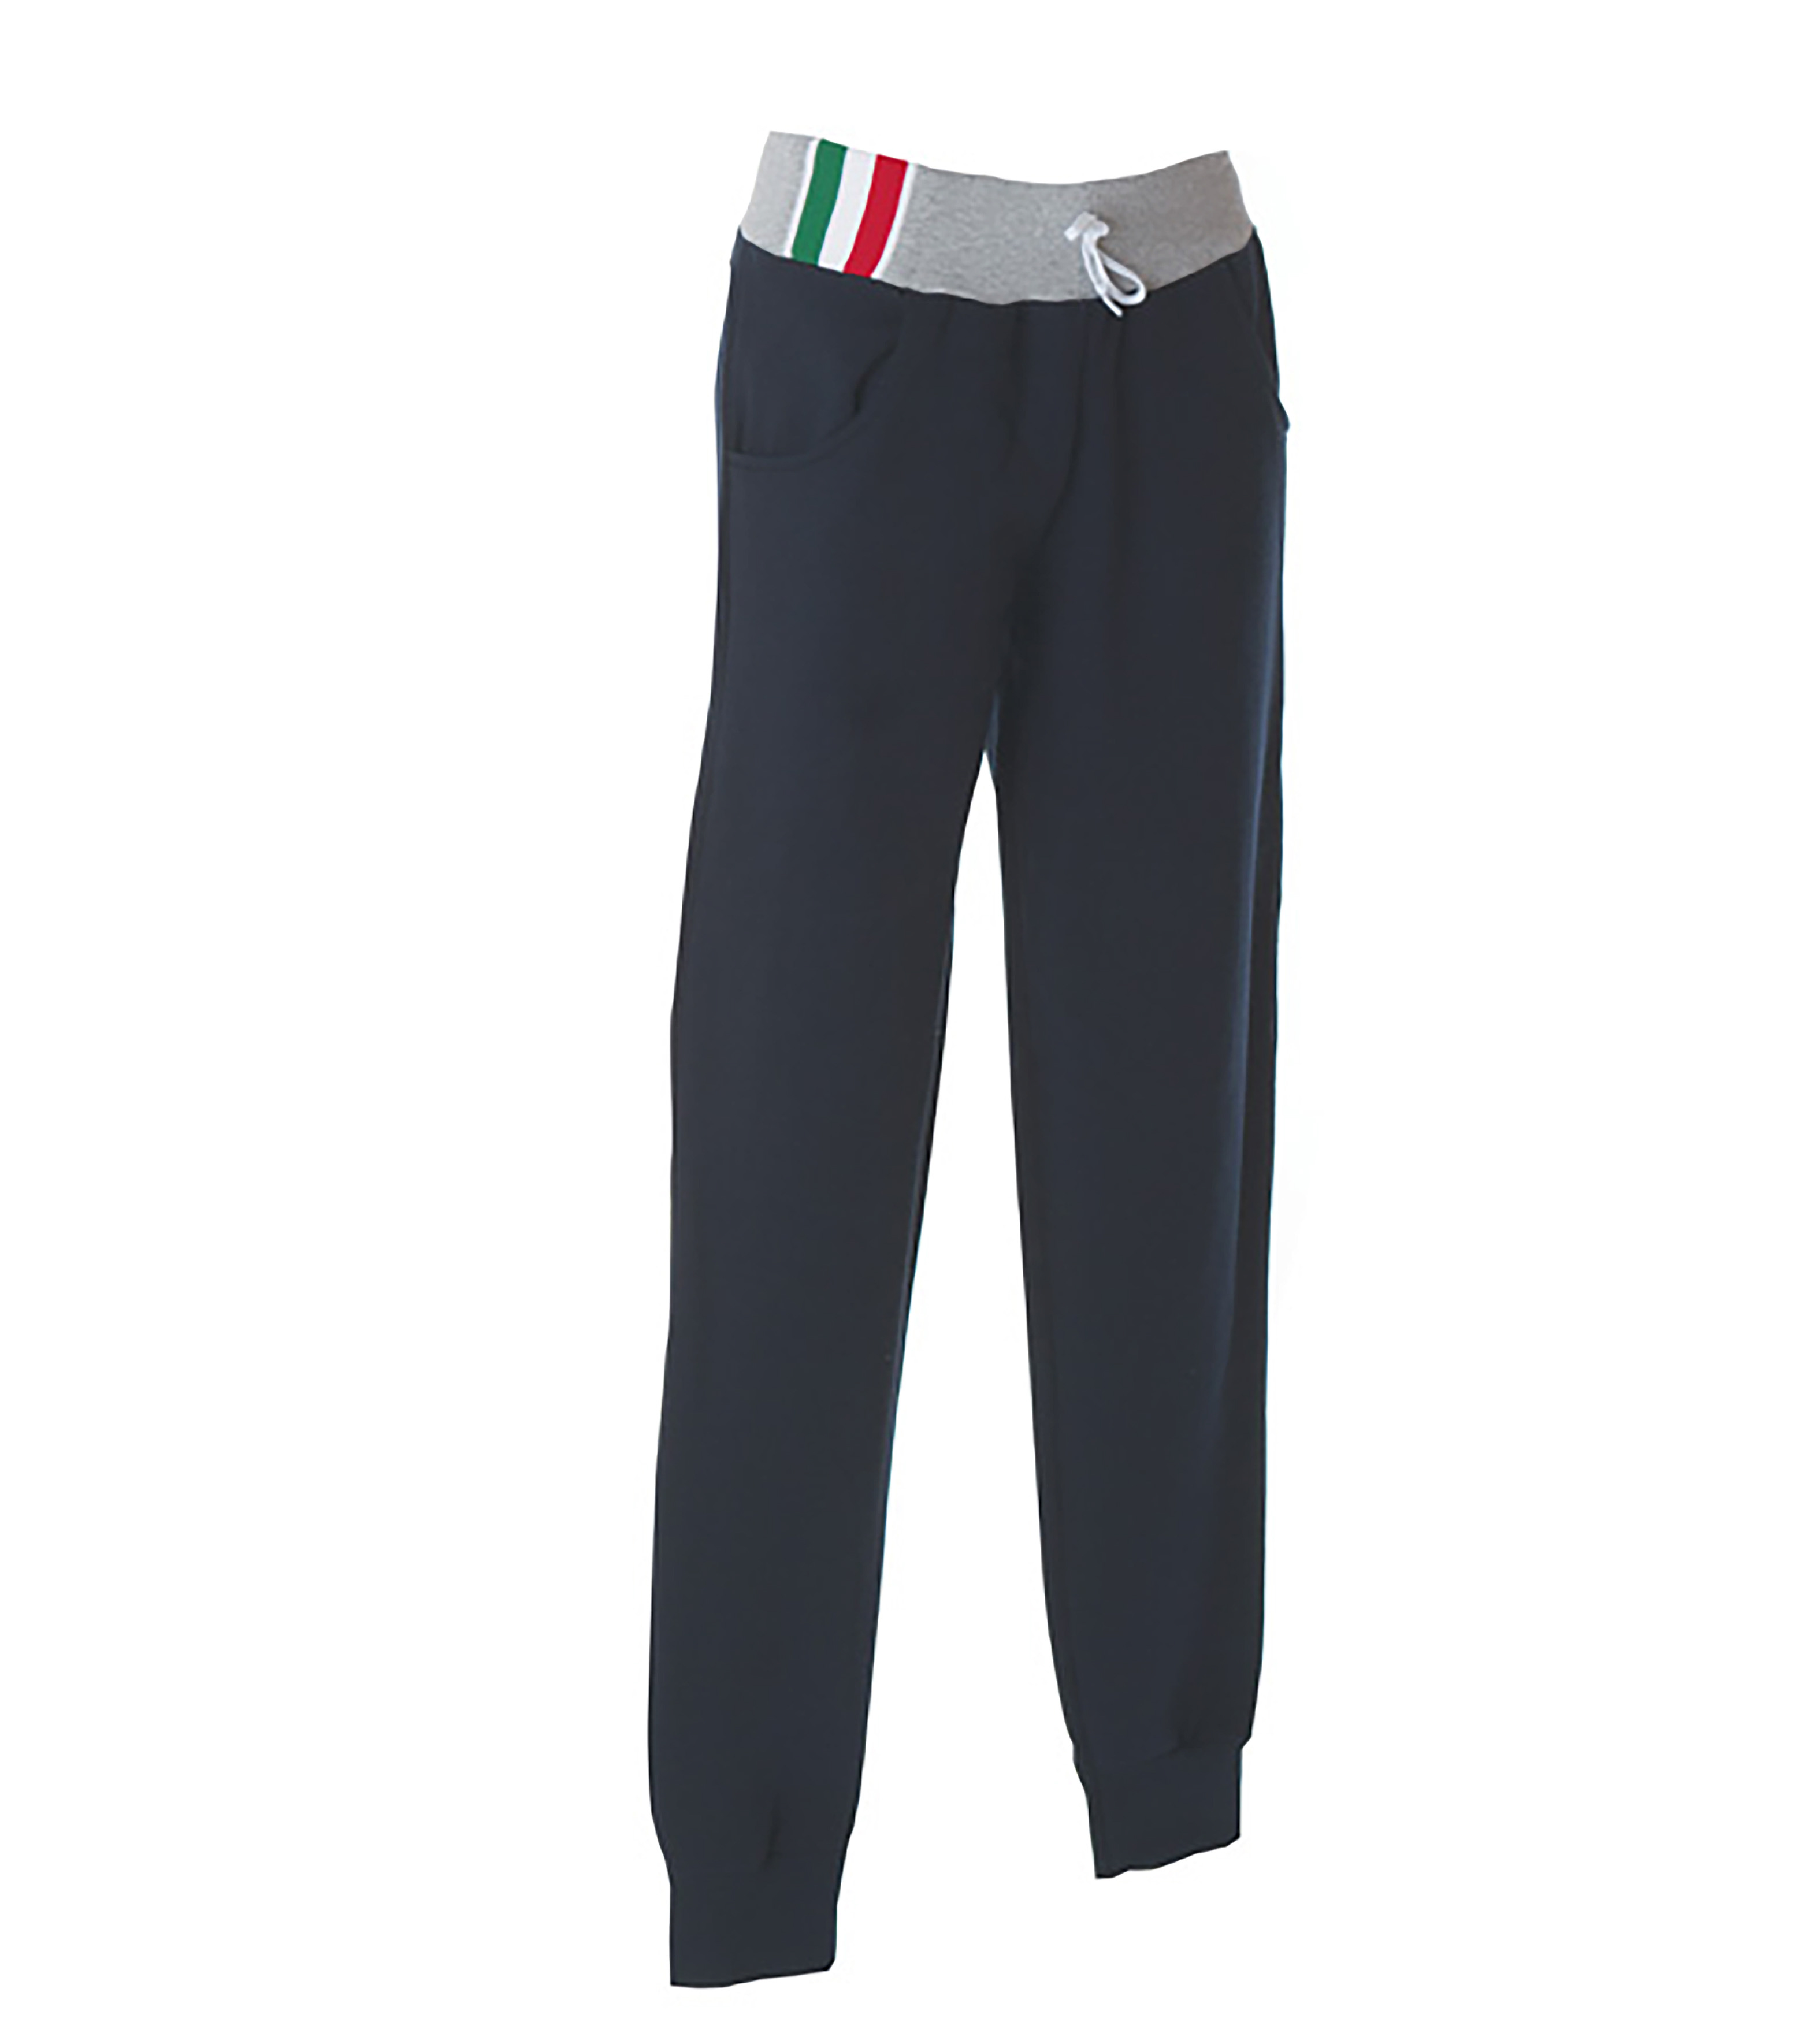 Palermo pants